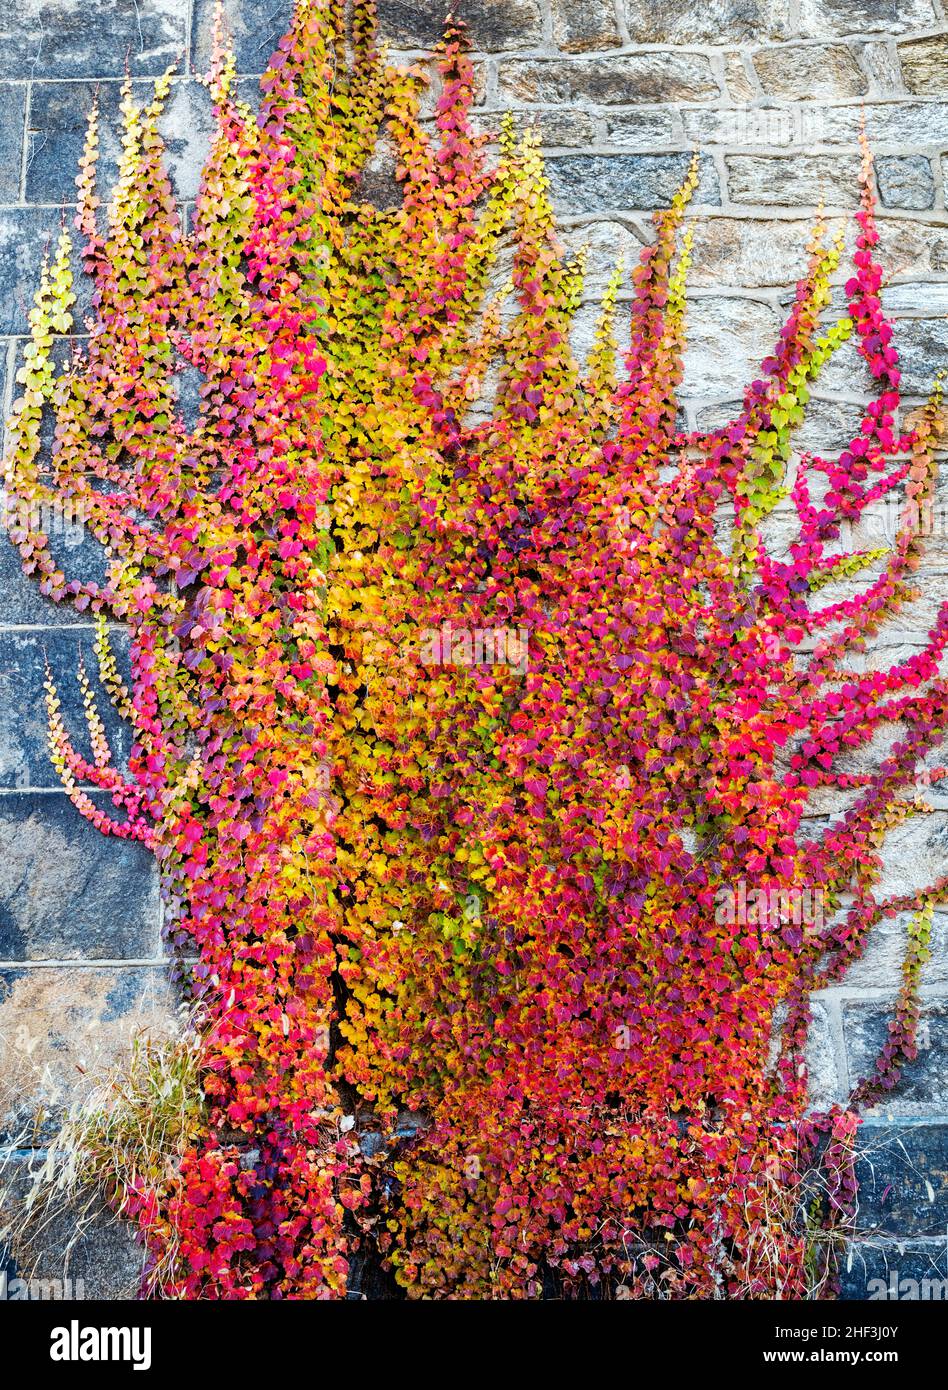 Pared de piedra cubierta de hiedra en hermosos colores de follaje otoñal Foto de stock